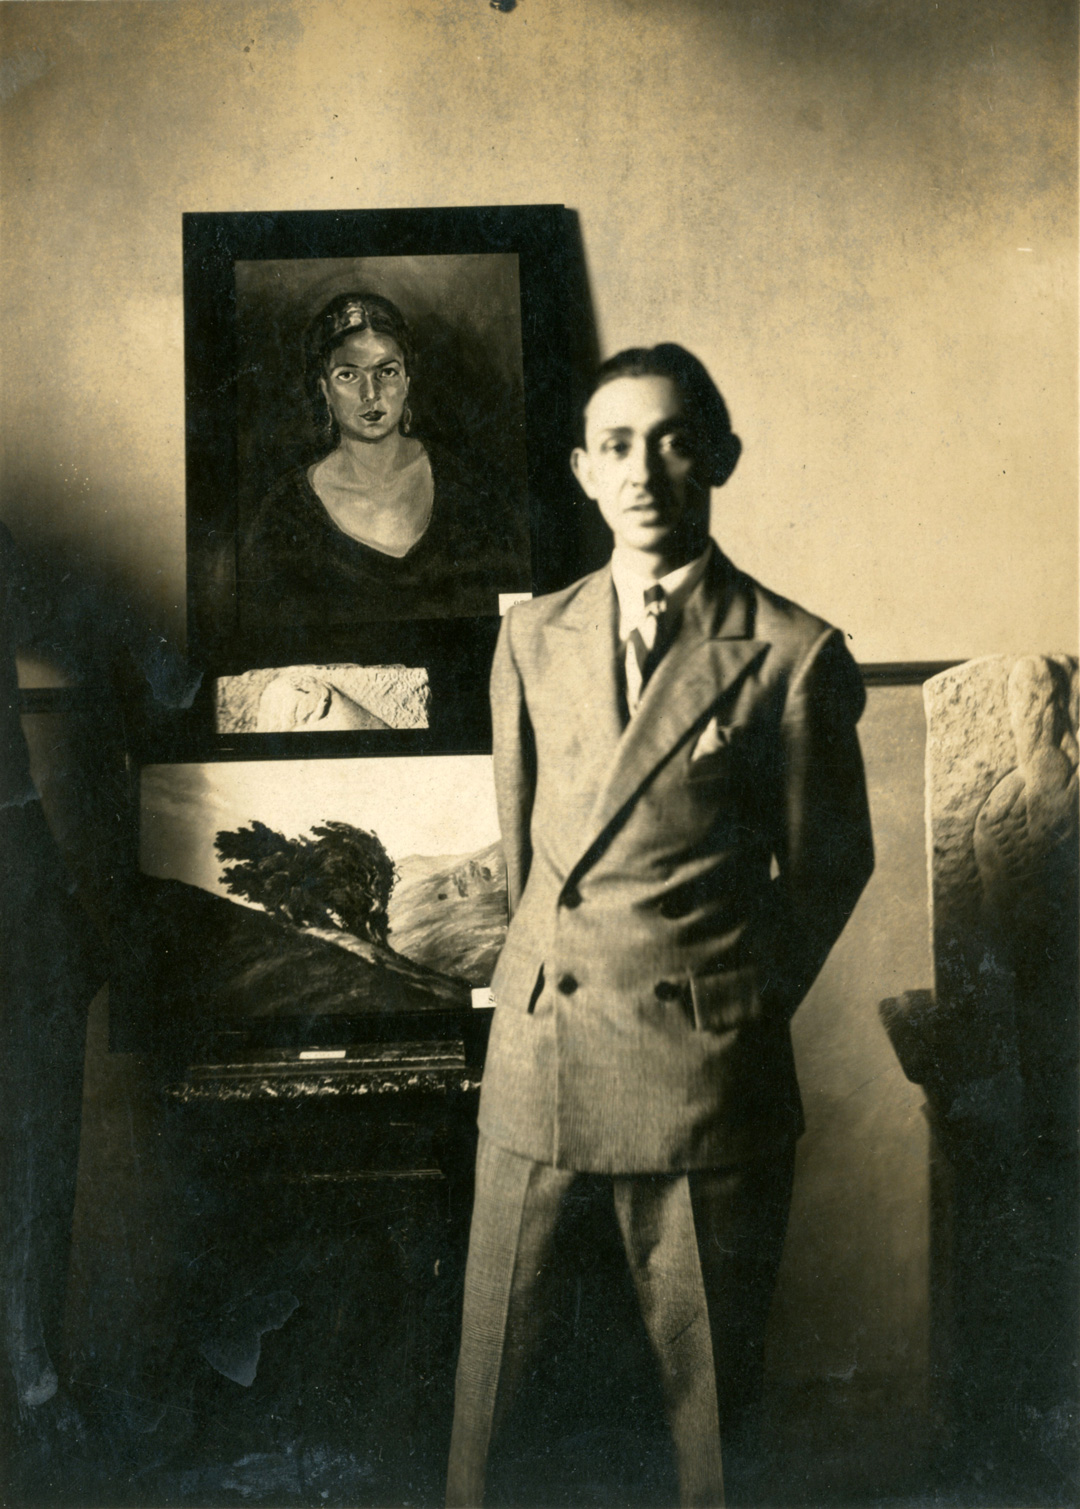 Manuel de la Cruz, Salón de Artes Plásticas de 1932.